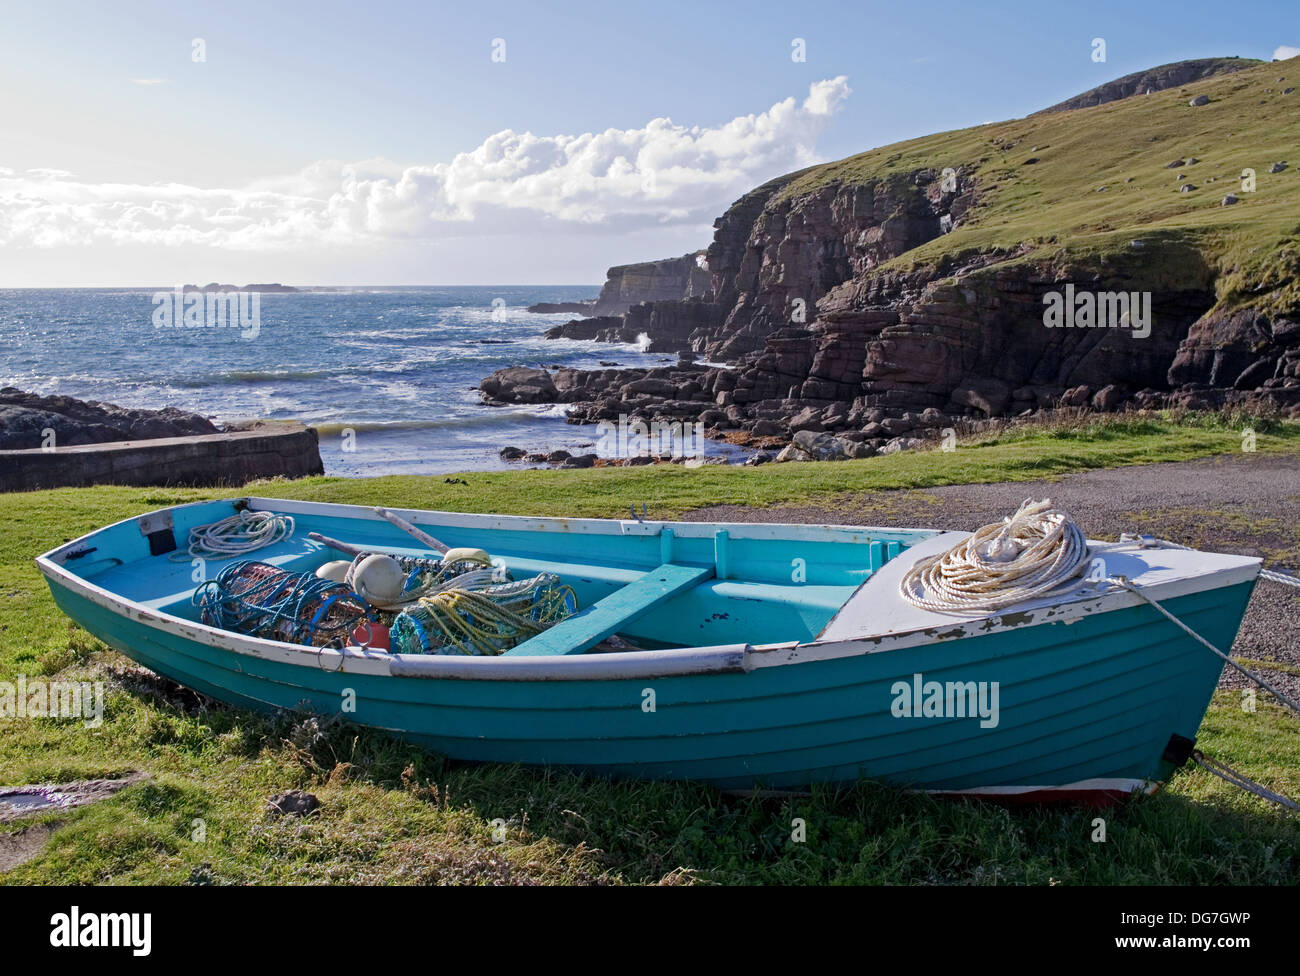 Imbarcazione piccola contenente gli attrezzi da pesca porto Chaligaig, da Droman, vicino Kinlochbervie, Sutherland, Northwest Highlands della Scozia UK Foto Stock